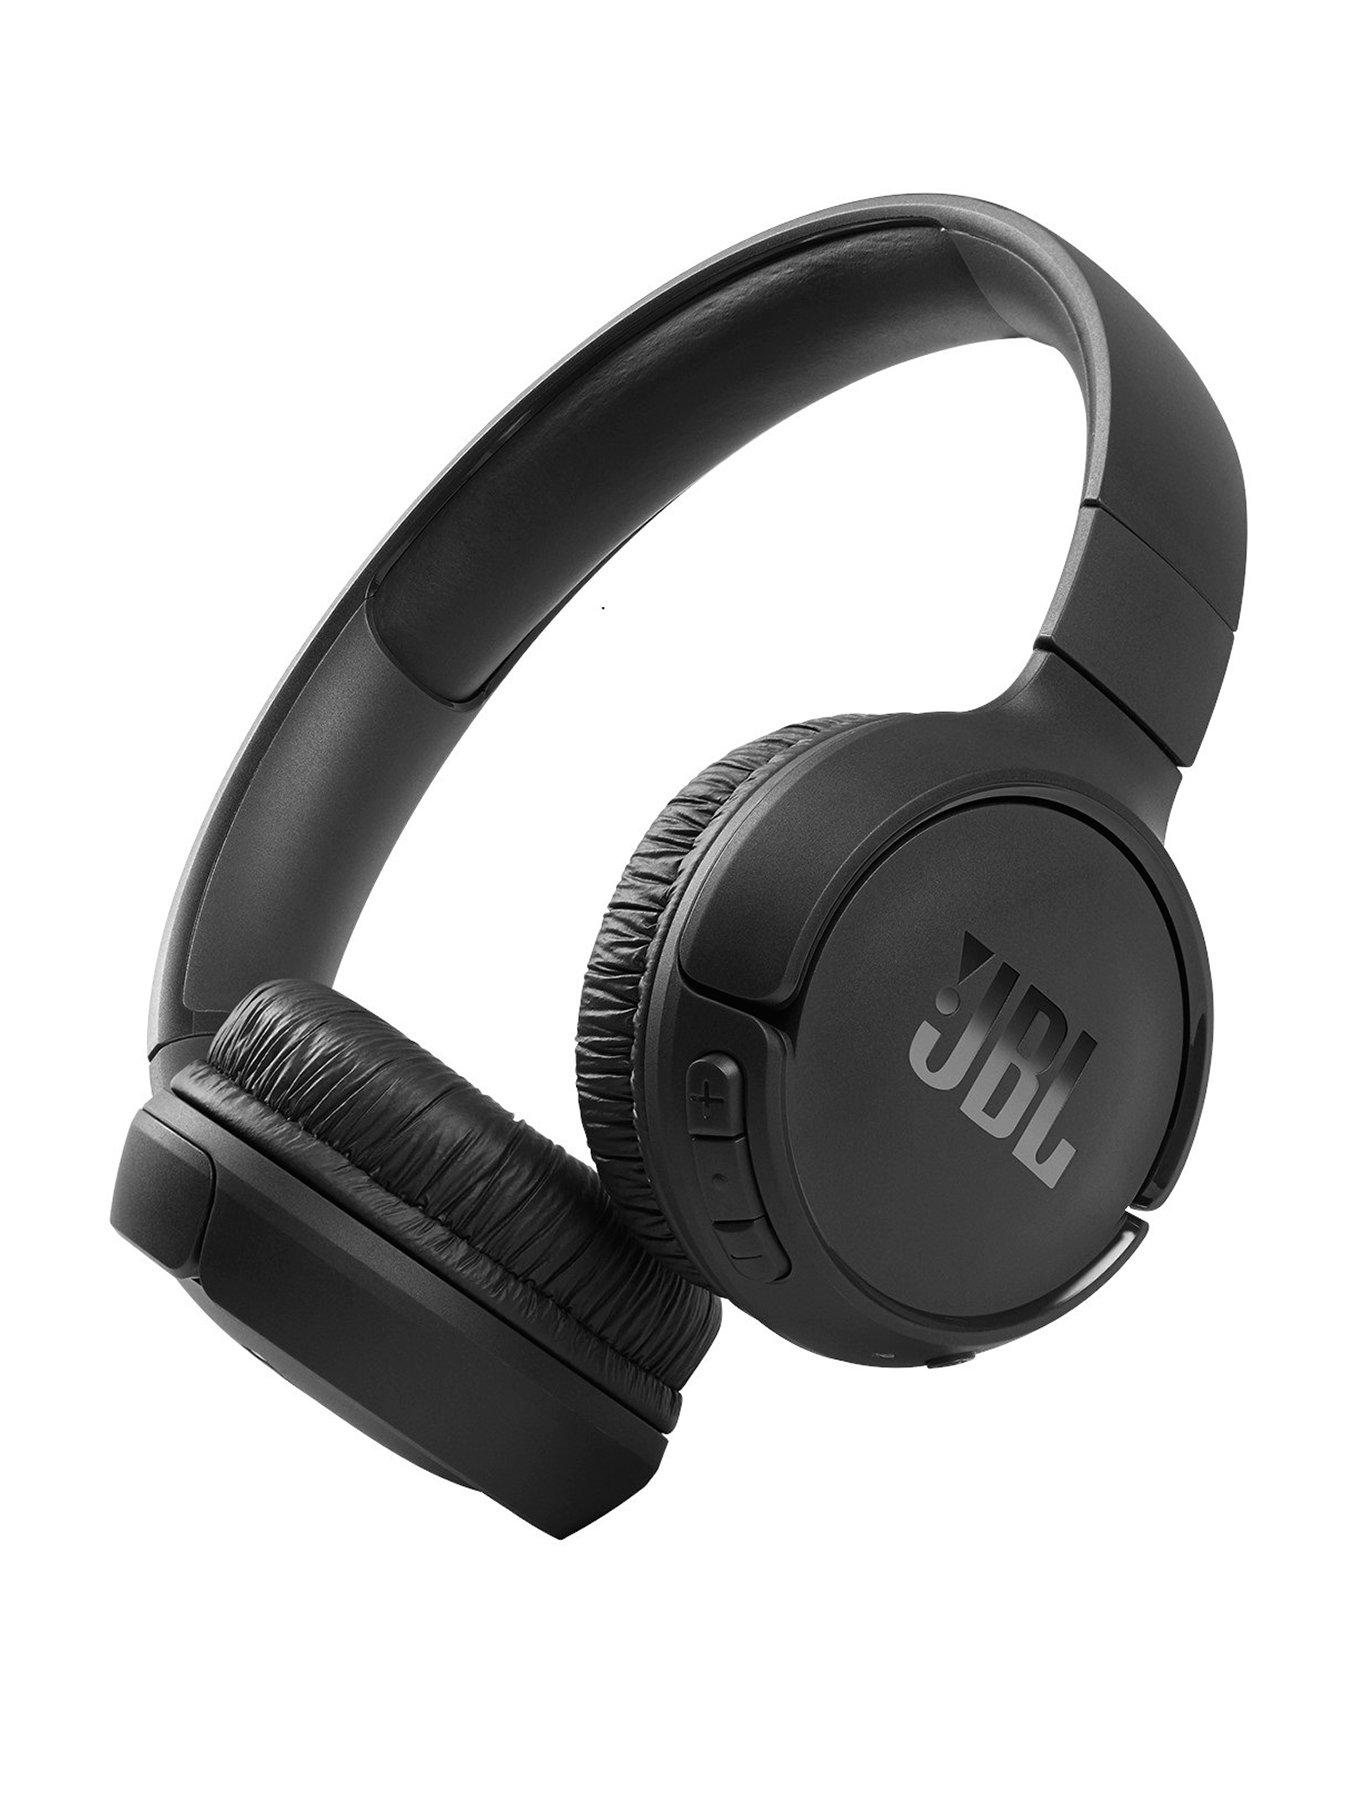 Jbl | Headphones | Electricals Ireland | Very